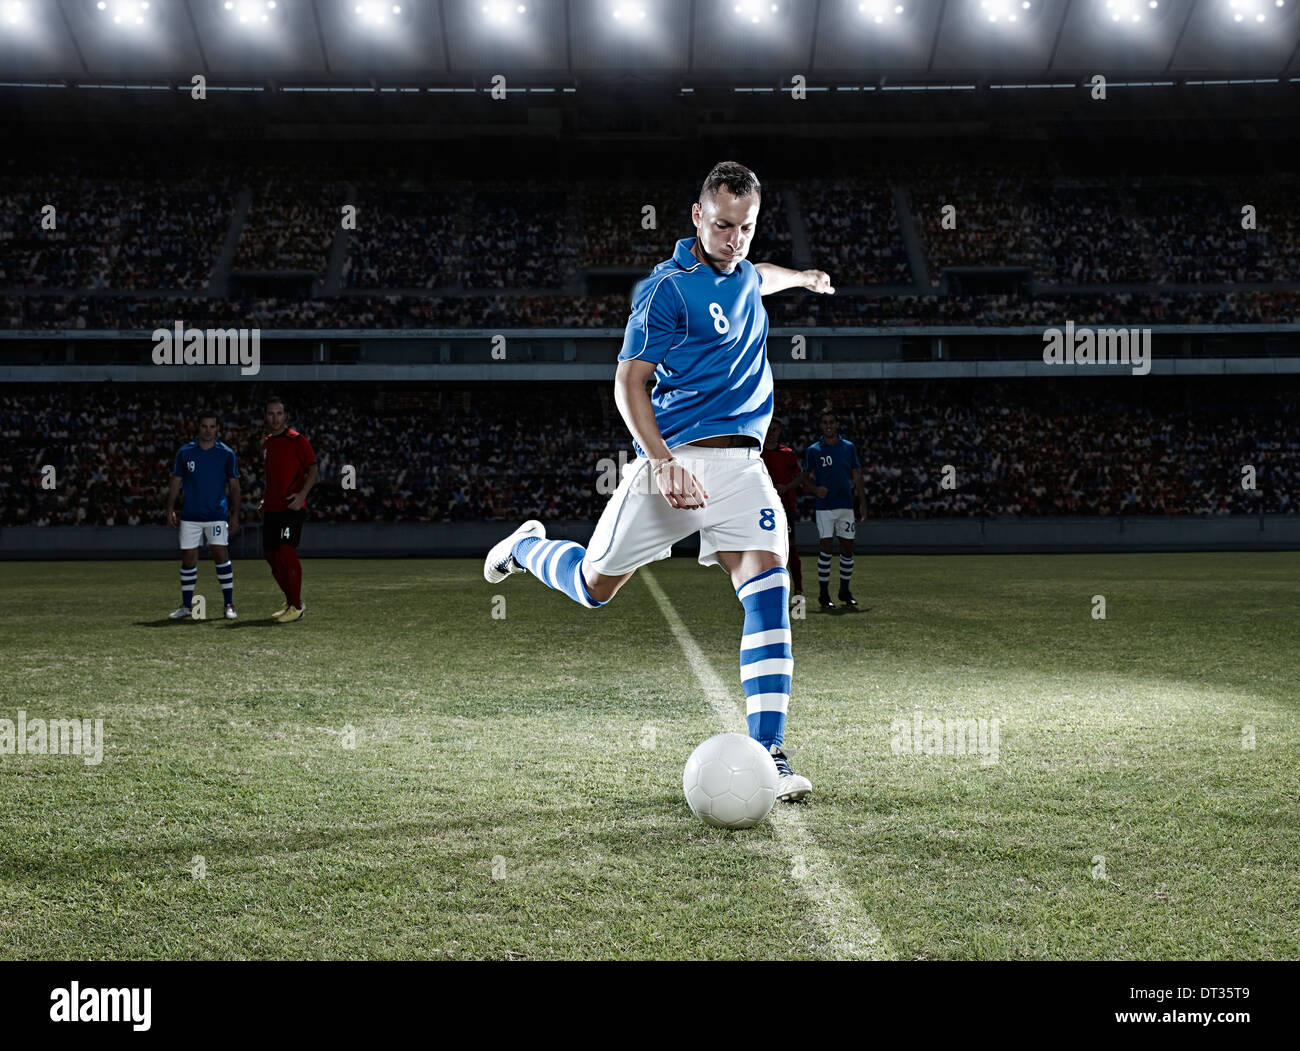 Jugador de fútbol chutar un balón en el campo Foto de stock